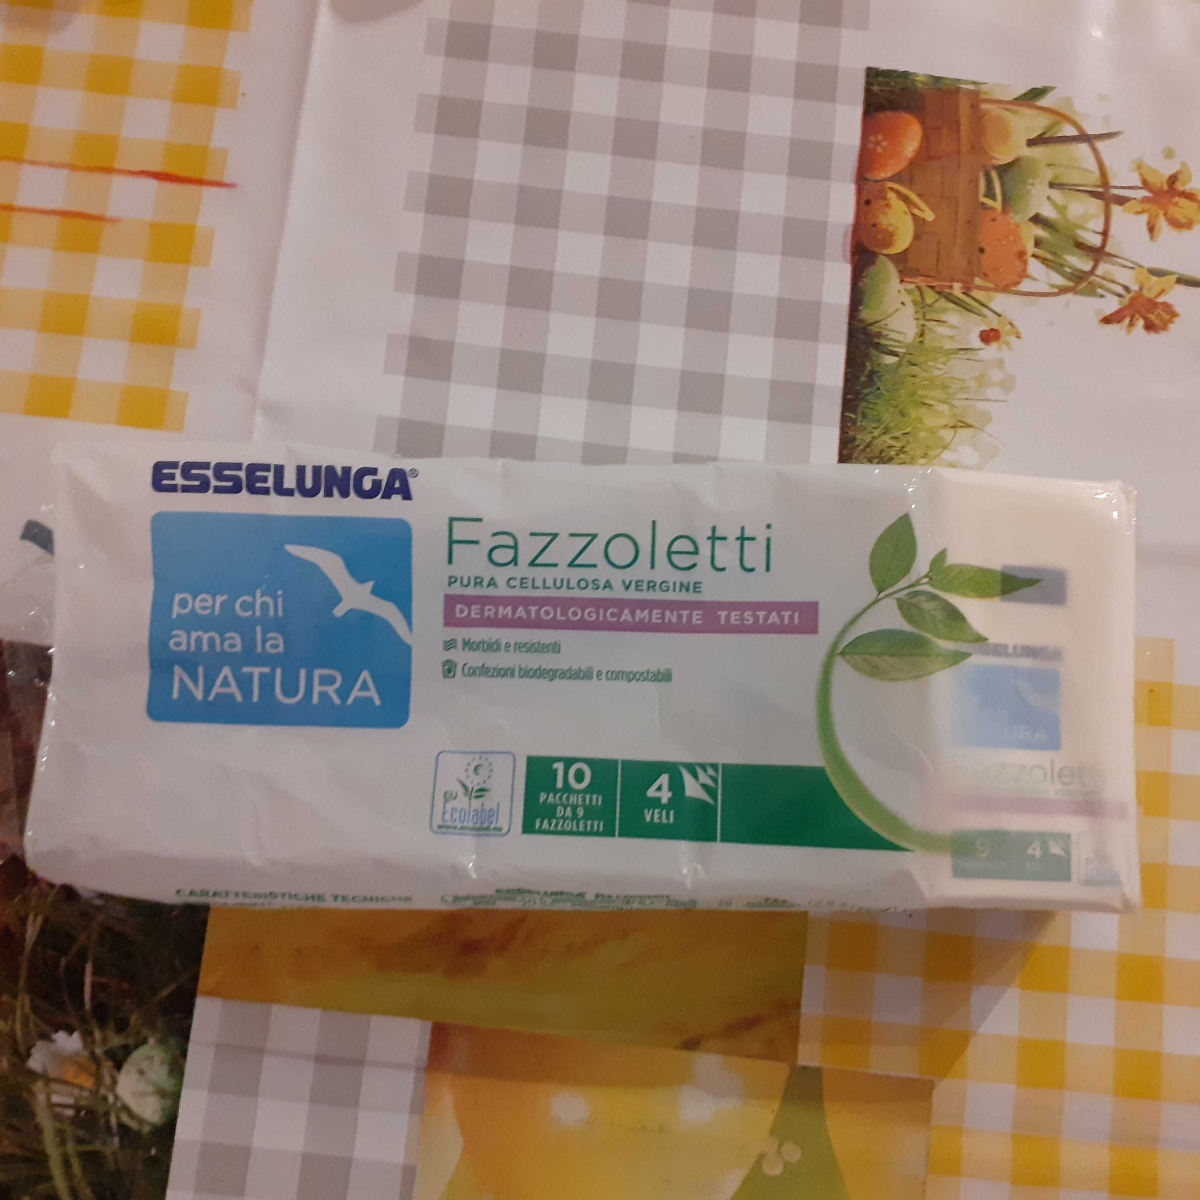 Esselunga Fazzoletti Review | abillion